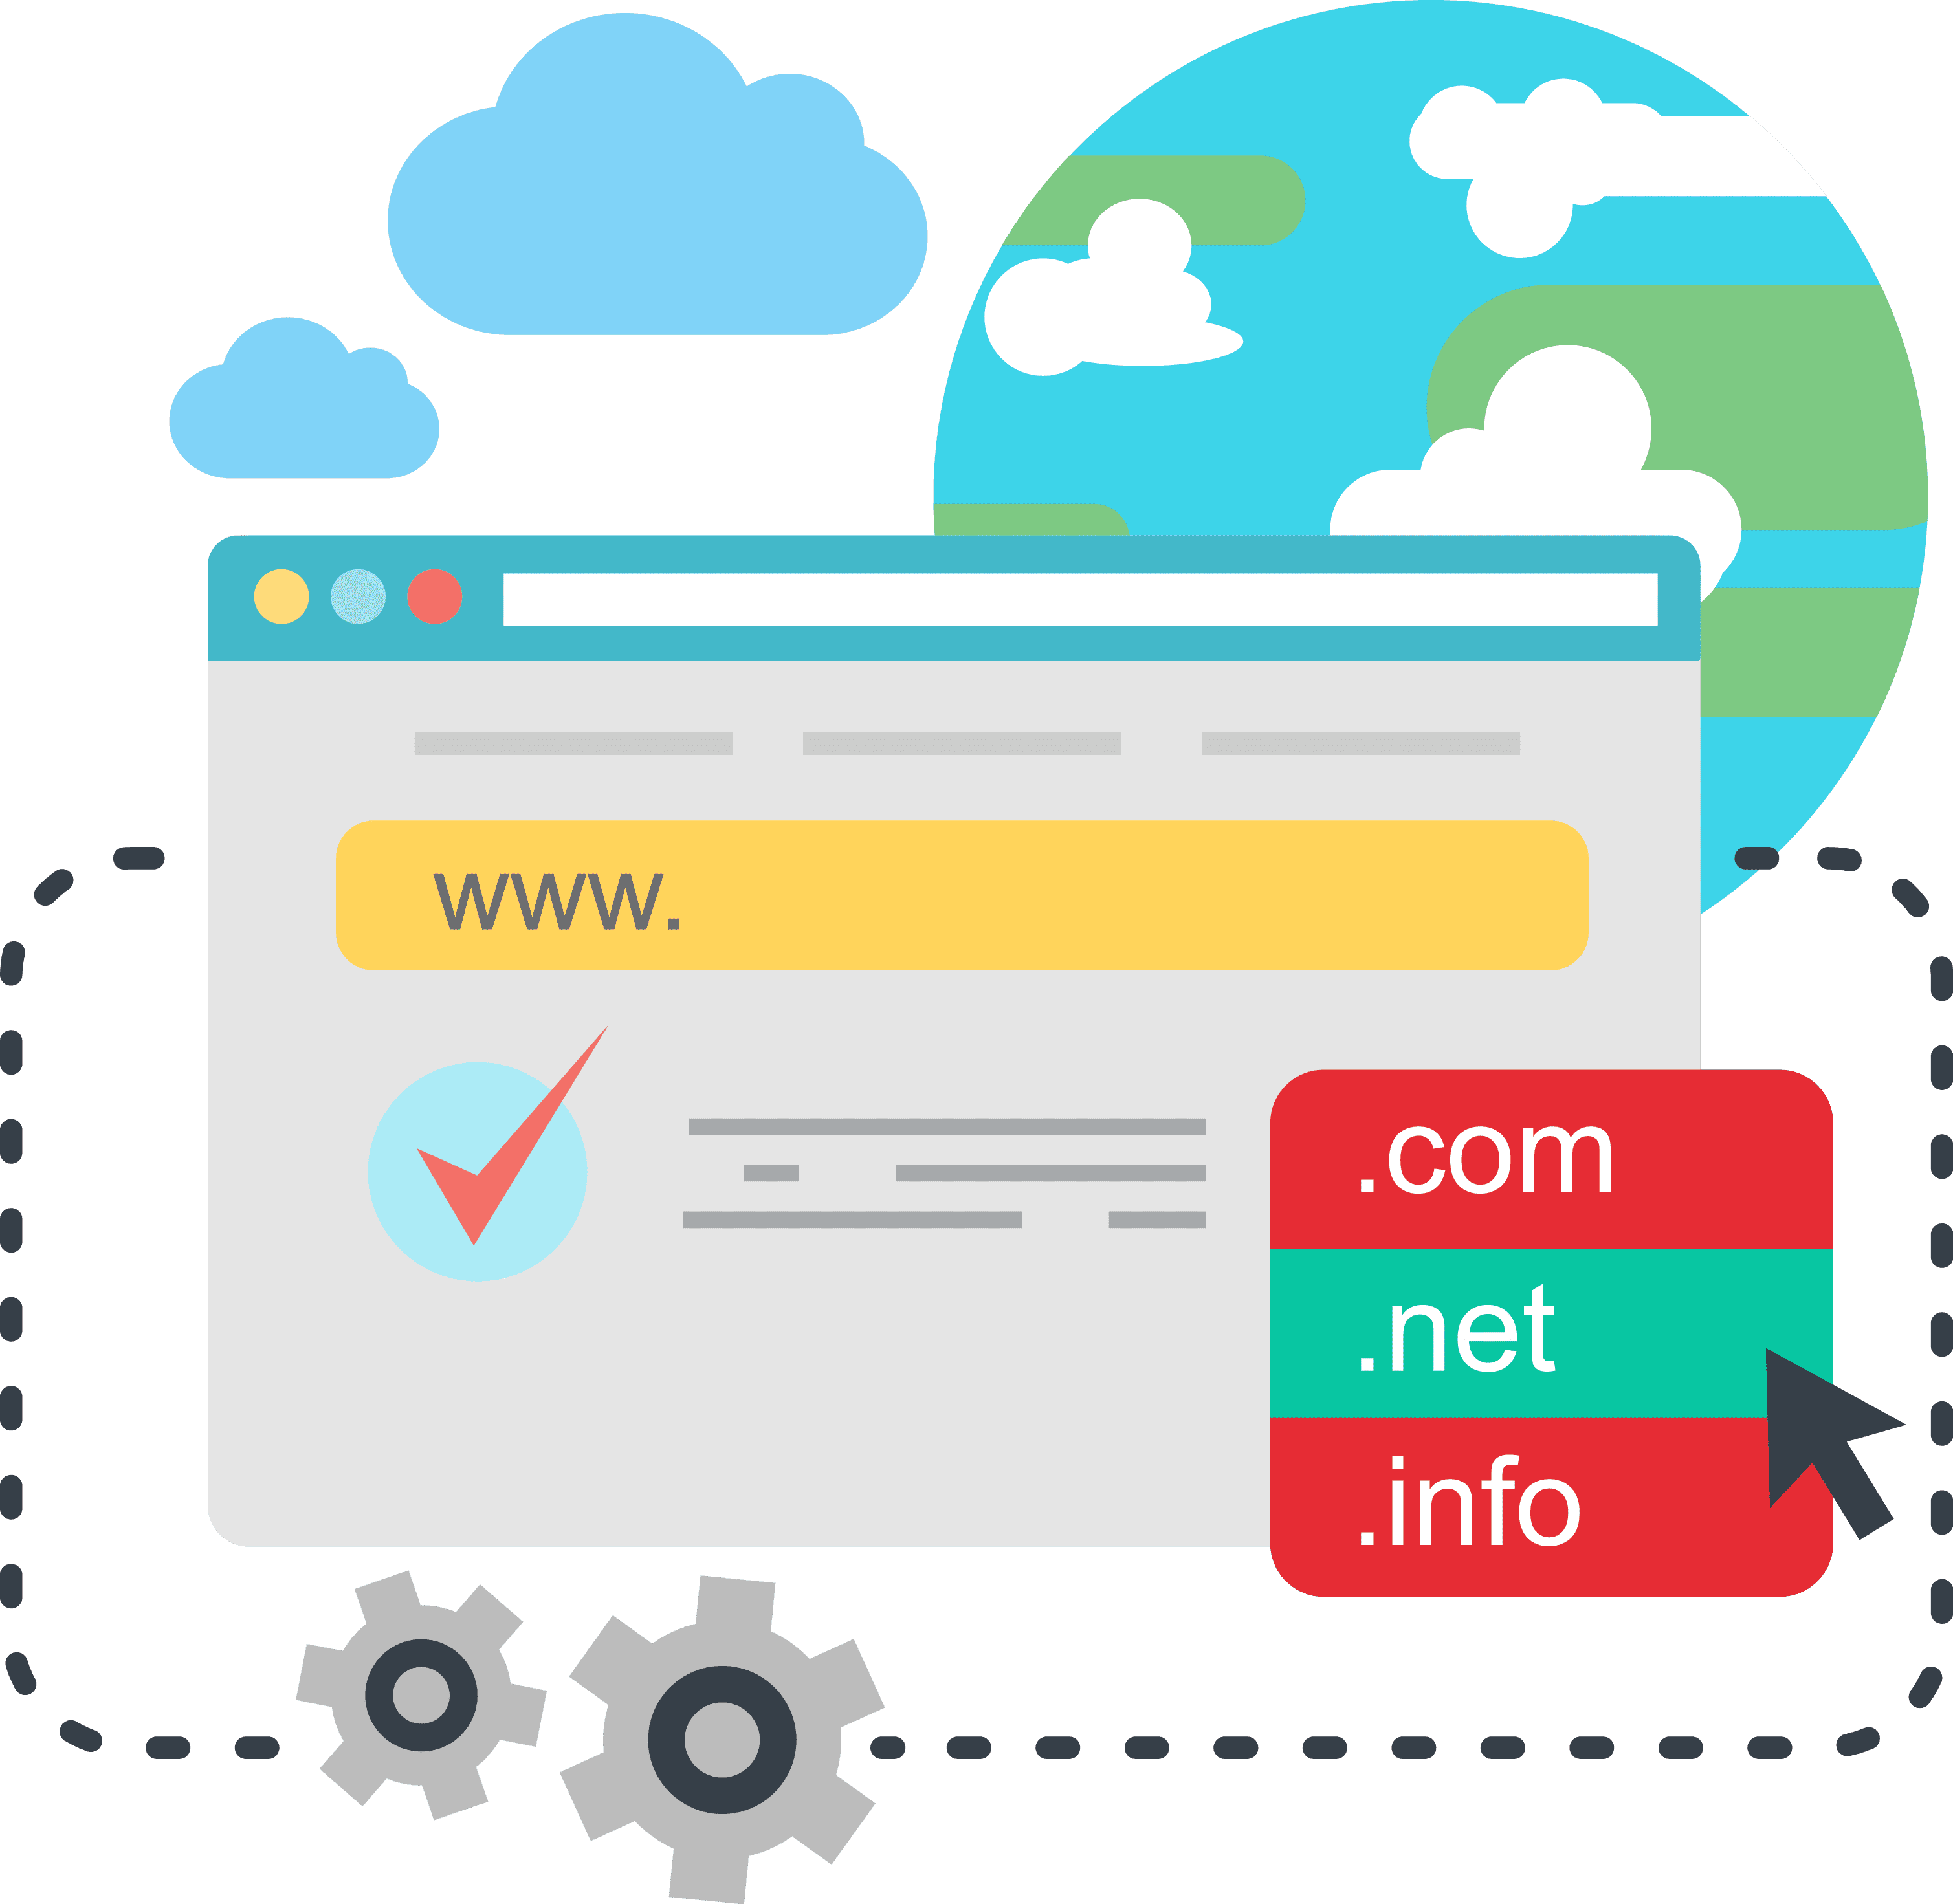 domain-website-hosting